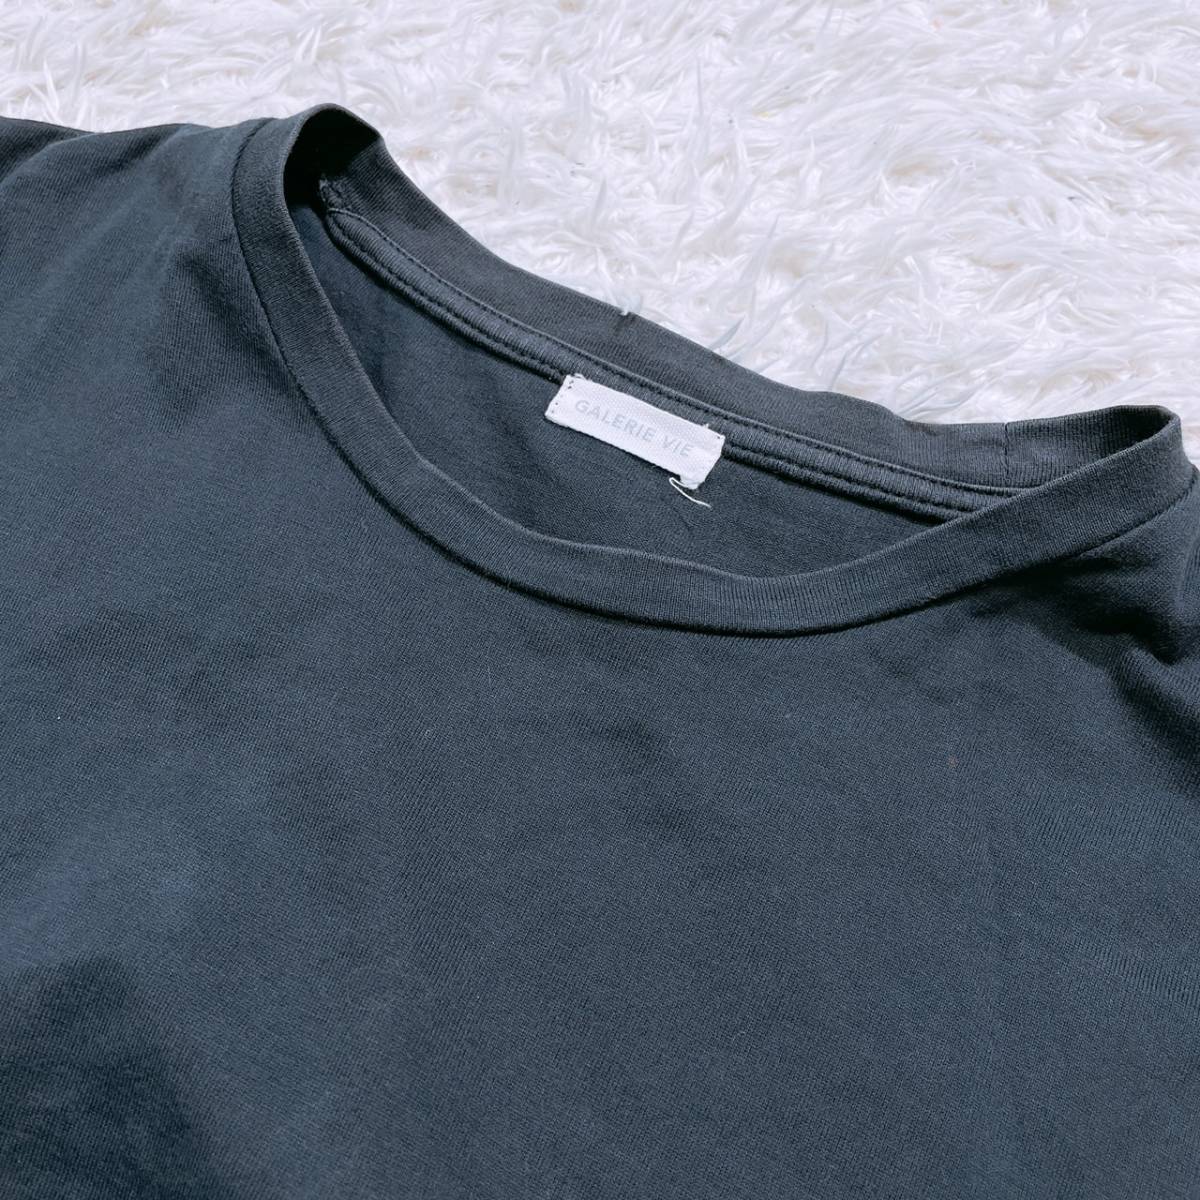 レディースM-L 1 GALERIE VIE トップス シャツ Tシャツ 半袖シャツ インナー ブラック 黒 丸ネック 日本製 ギャルリー・ヴィー 【22783】